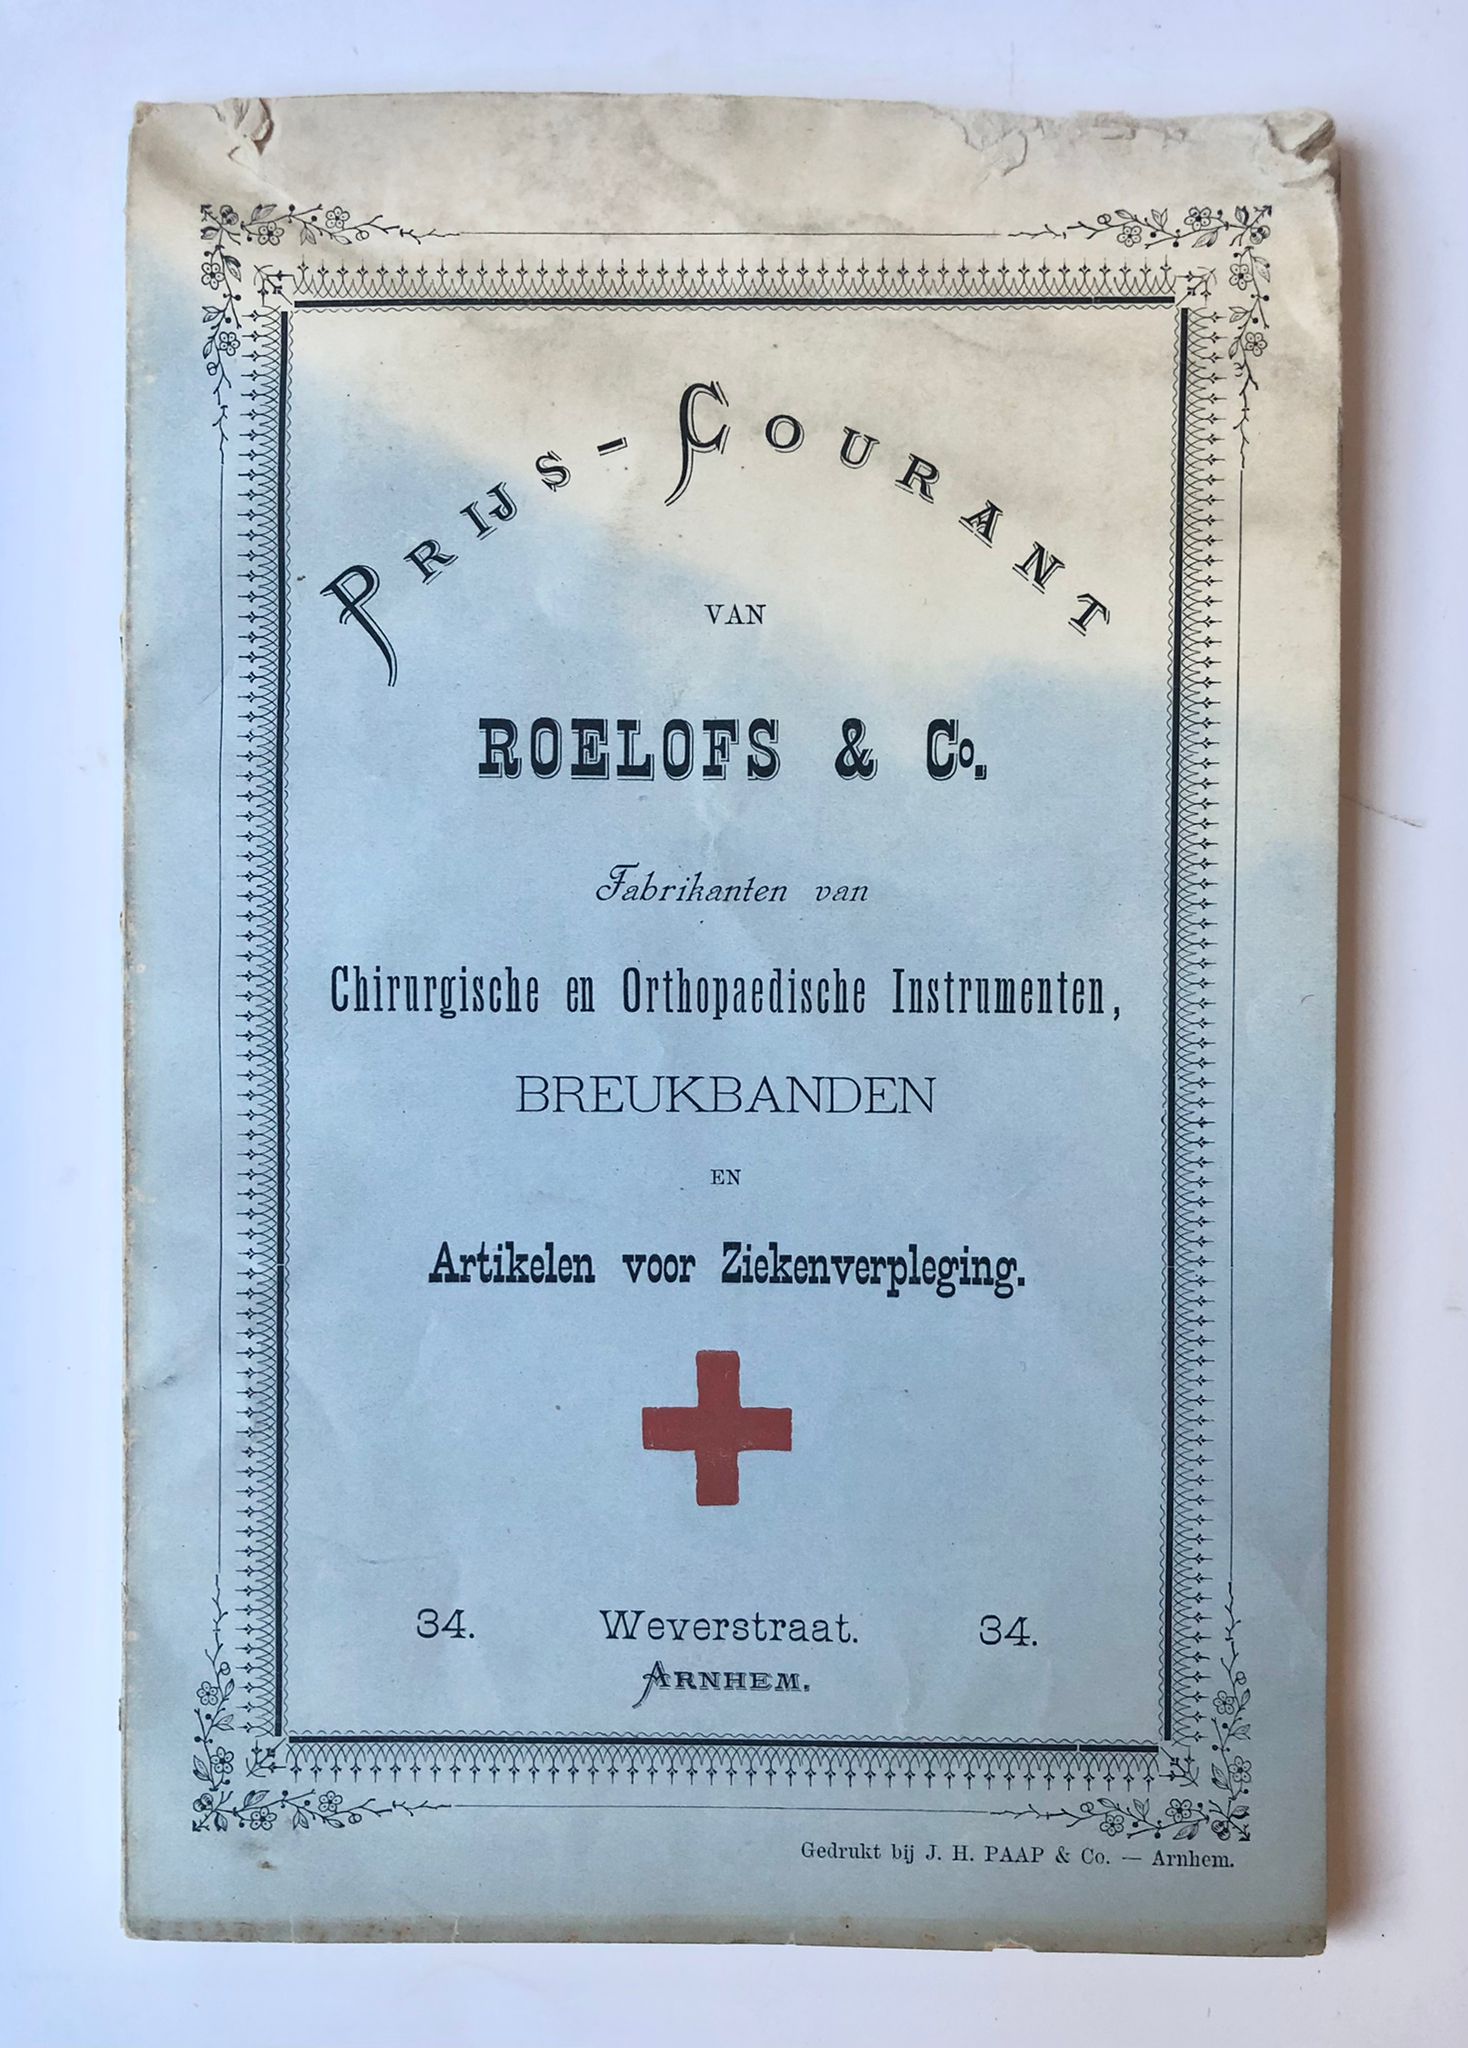 [Pricelist ca 1900, medical instruments] Prijs-courant van Roelofs en Co., fabrikanten van chirurgische en orthopaedische instrumenten, breukbanden en artikelen voor ziekenverpleging. Arnhem, [ca. 1900?], 30 pag., geillustreerd.